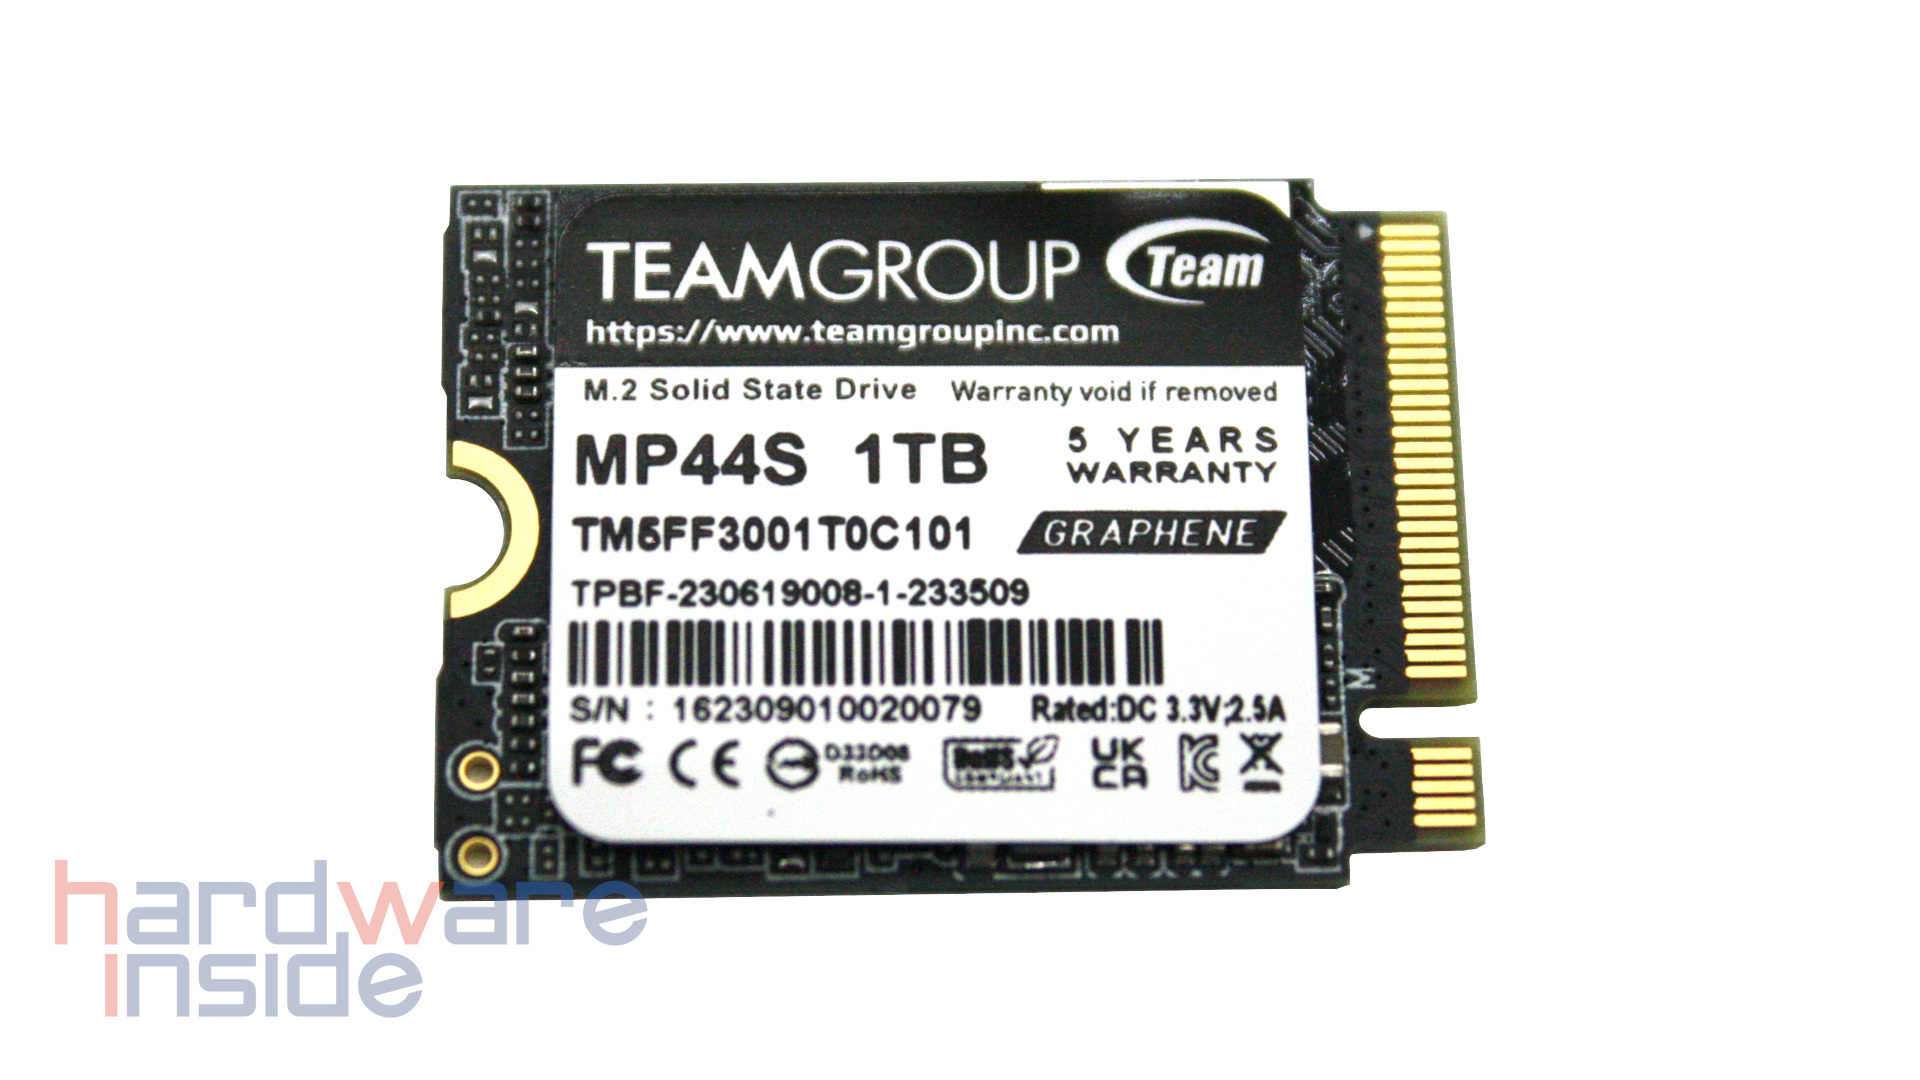 Die TeamGroup MP44S ist eine M.2 SSD im 2230 Formfaktor